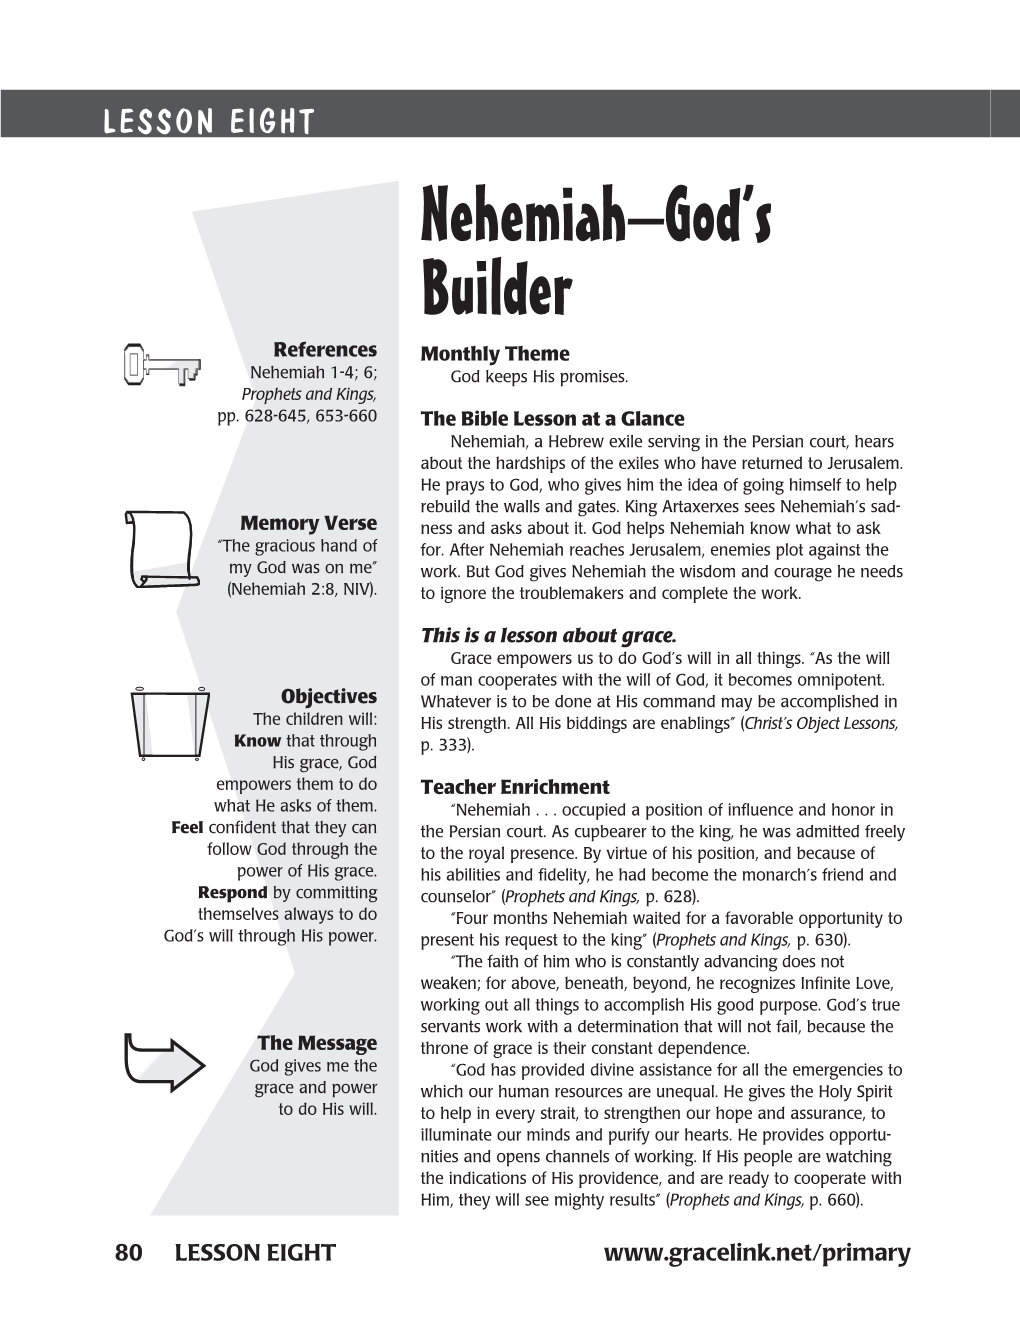 Nehemiah–God's Builder